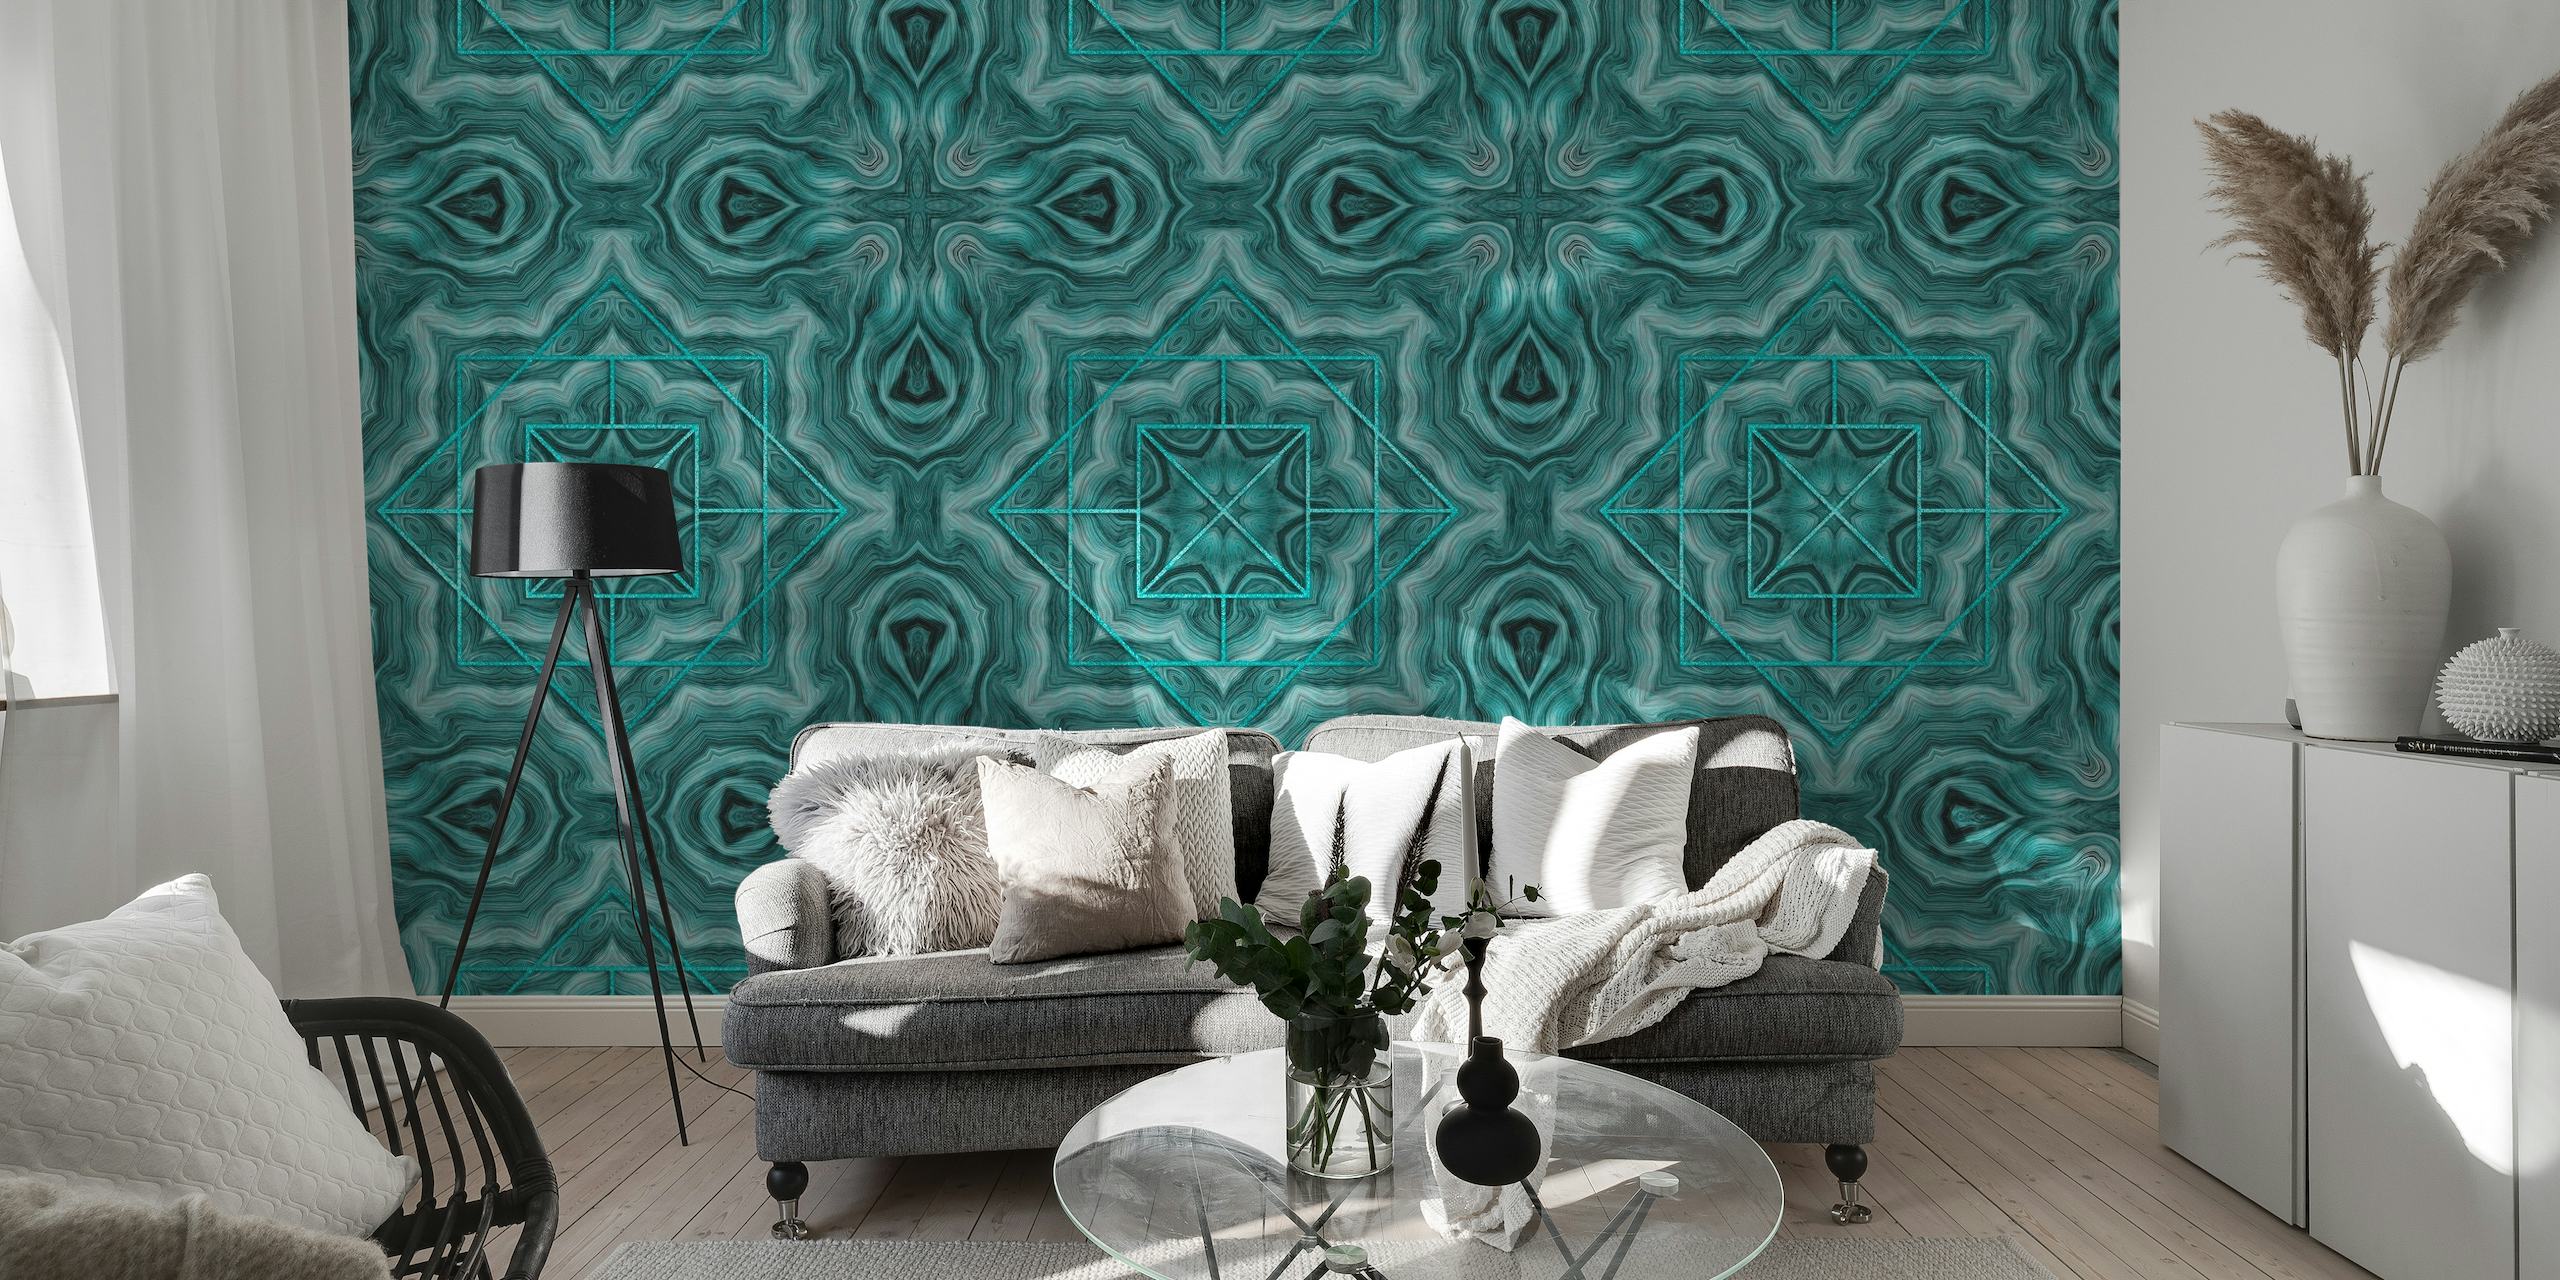 Art Deco Inspired Marble Tiles tapete